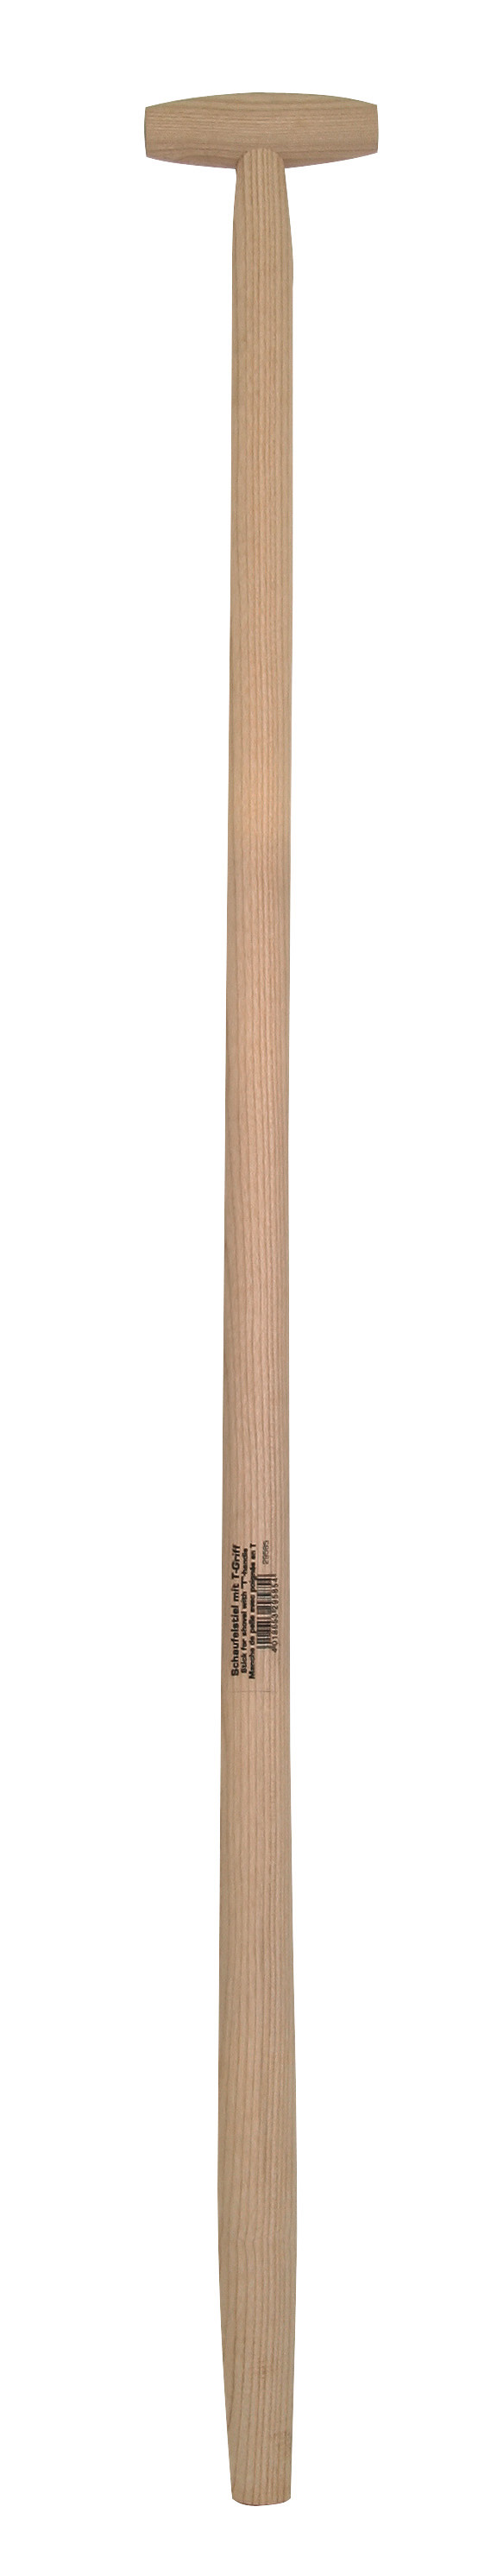 Schaufelstiel aus Holz mit T-Griif